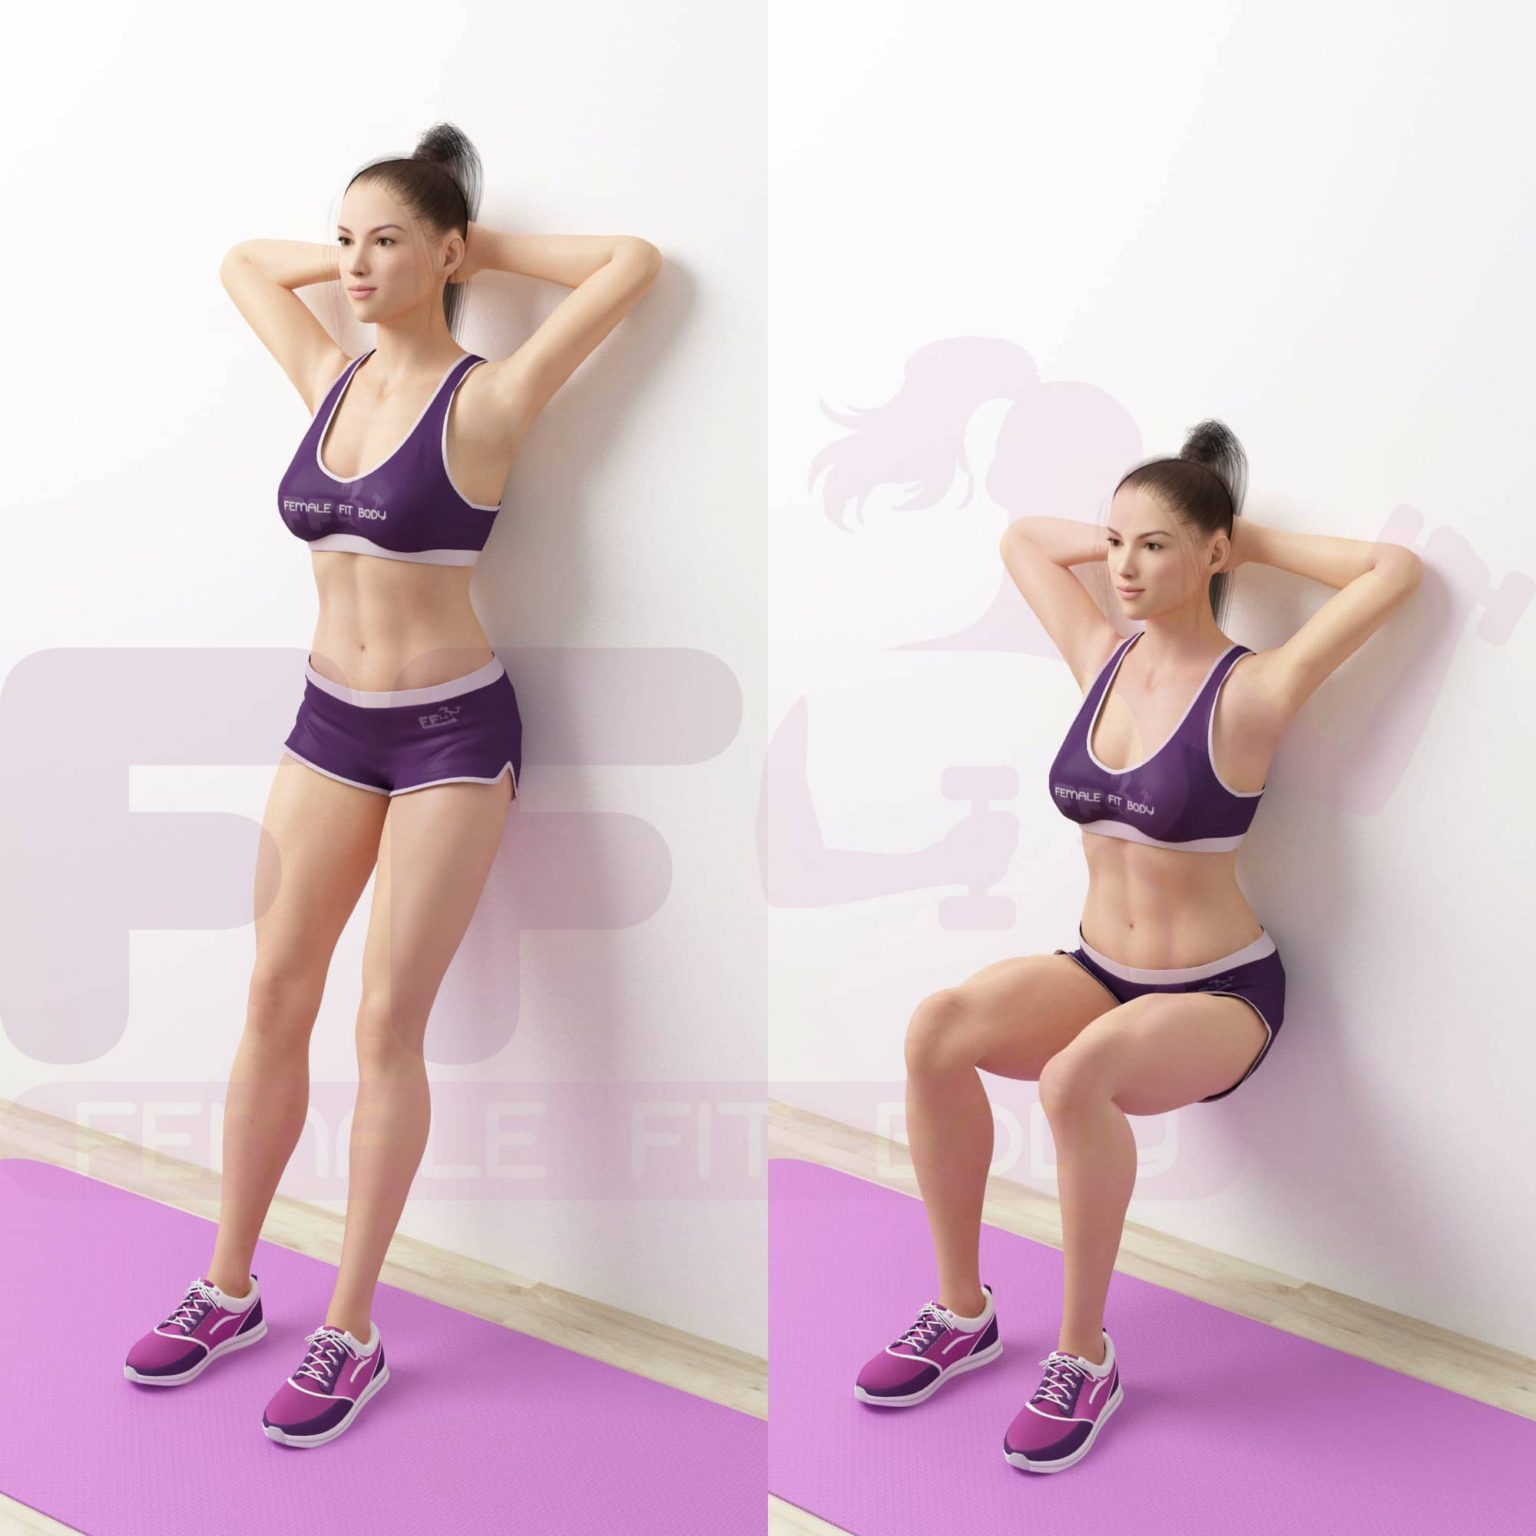 Как правильно делать упражнение «стульчик» у стены» — 4 вида движения и какие мышцы работают? - леди стиль жизни